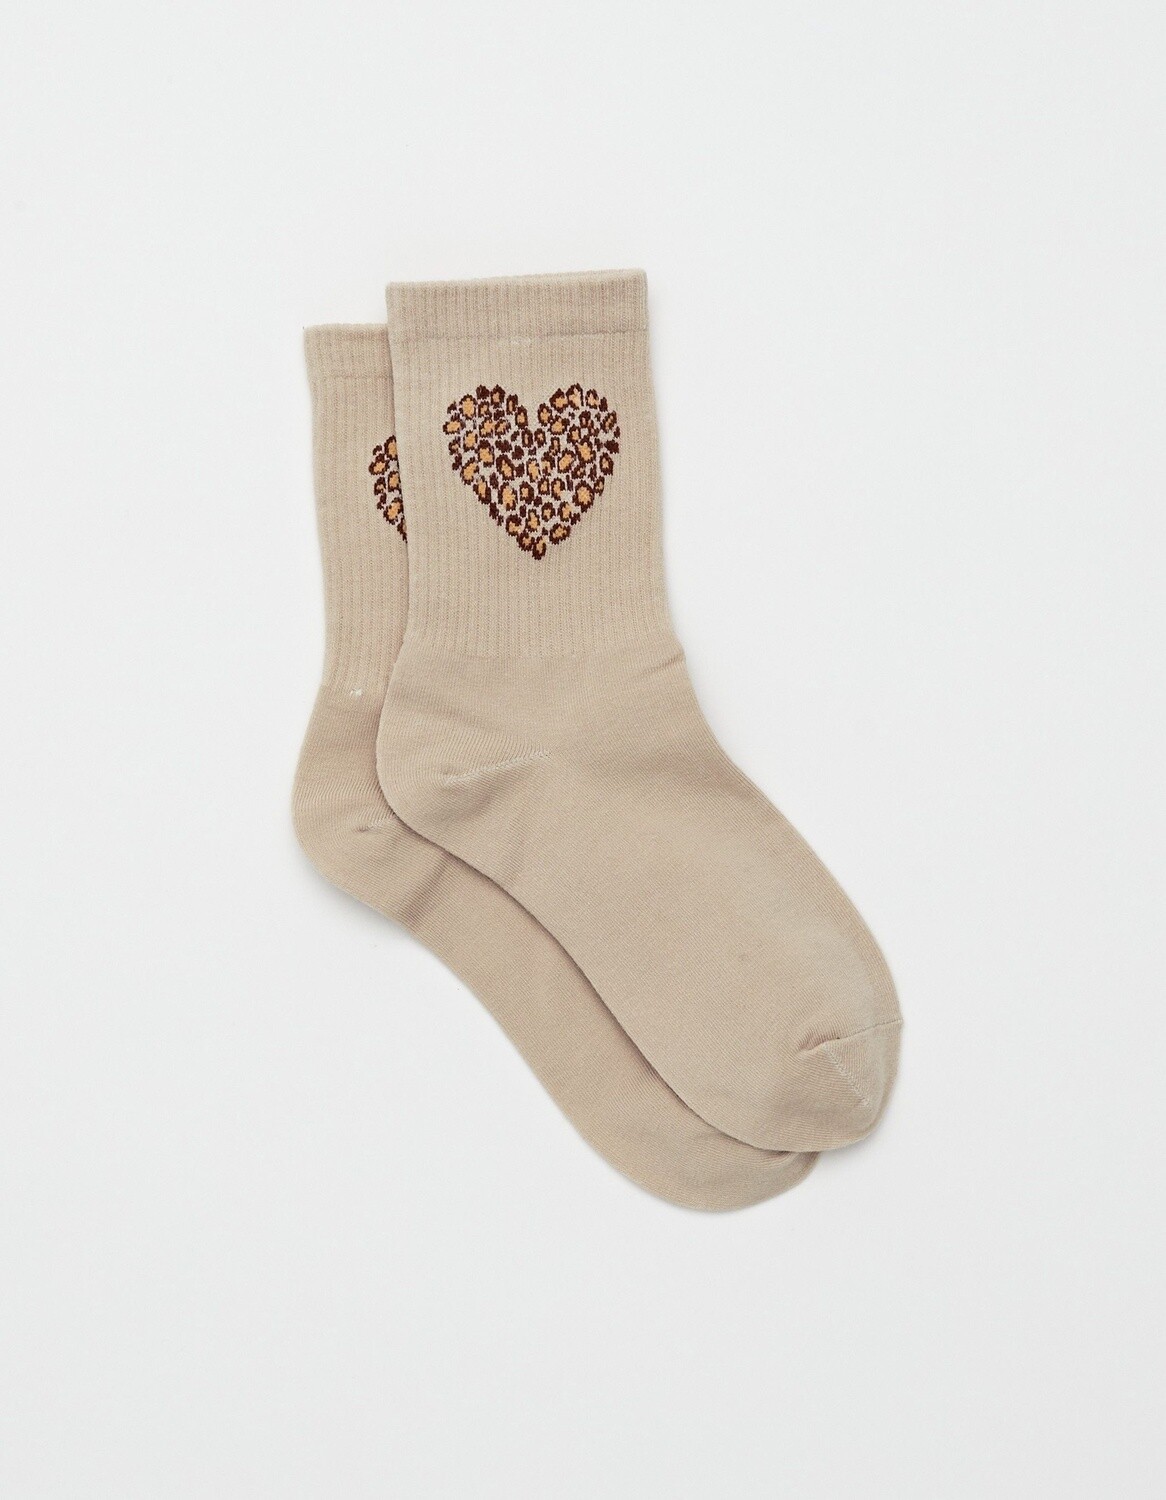 Stella + Gemma Socks, Cream W/Choco Heart